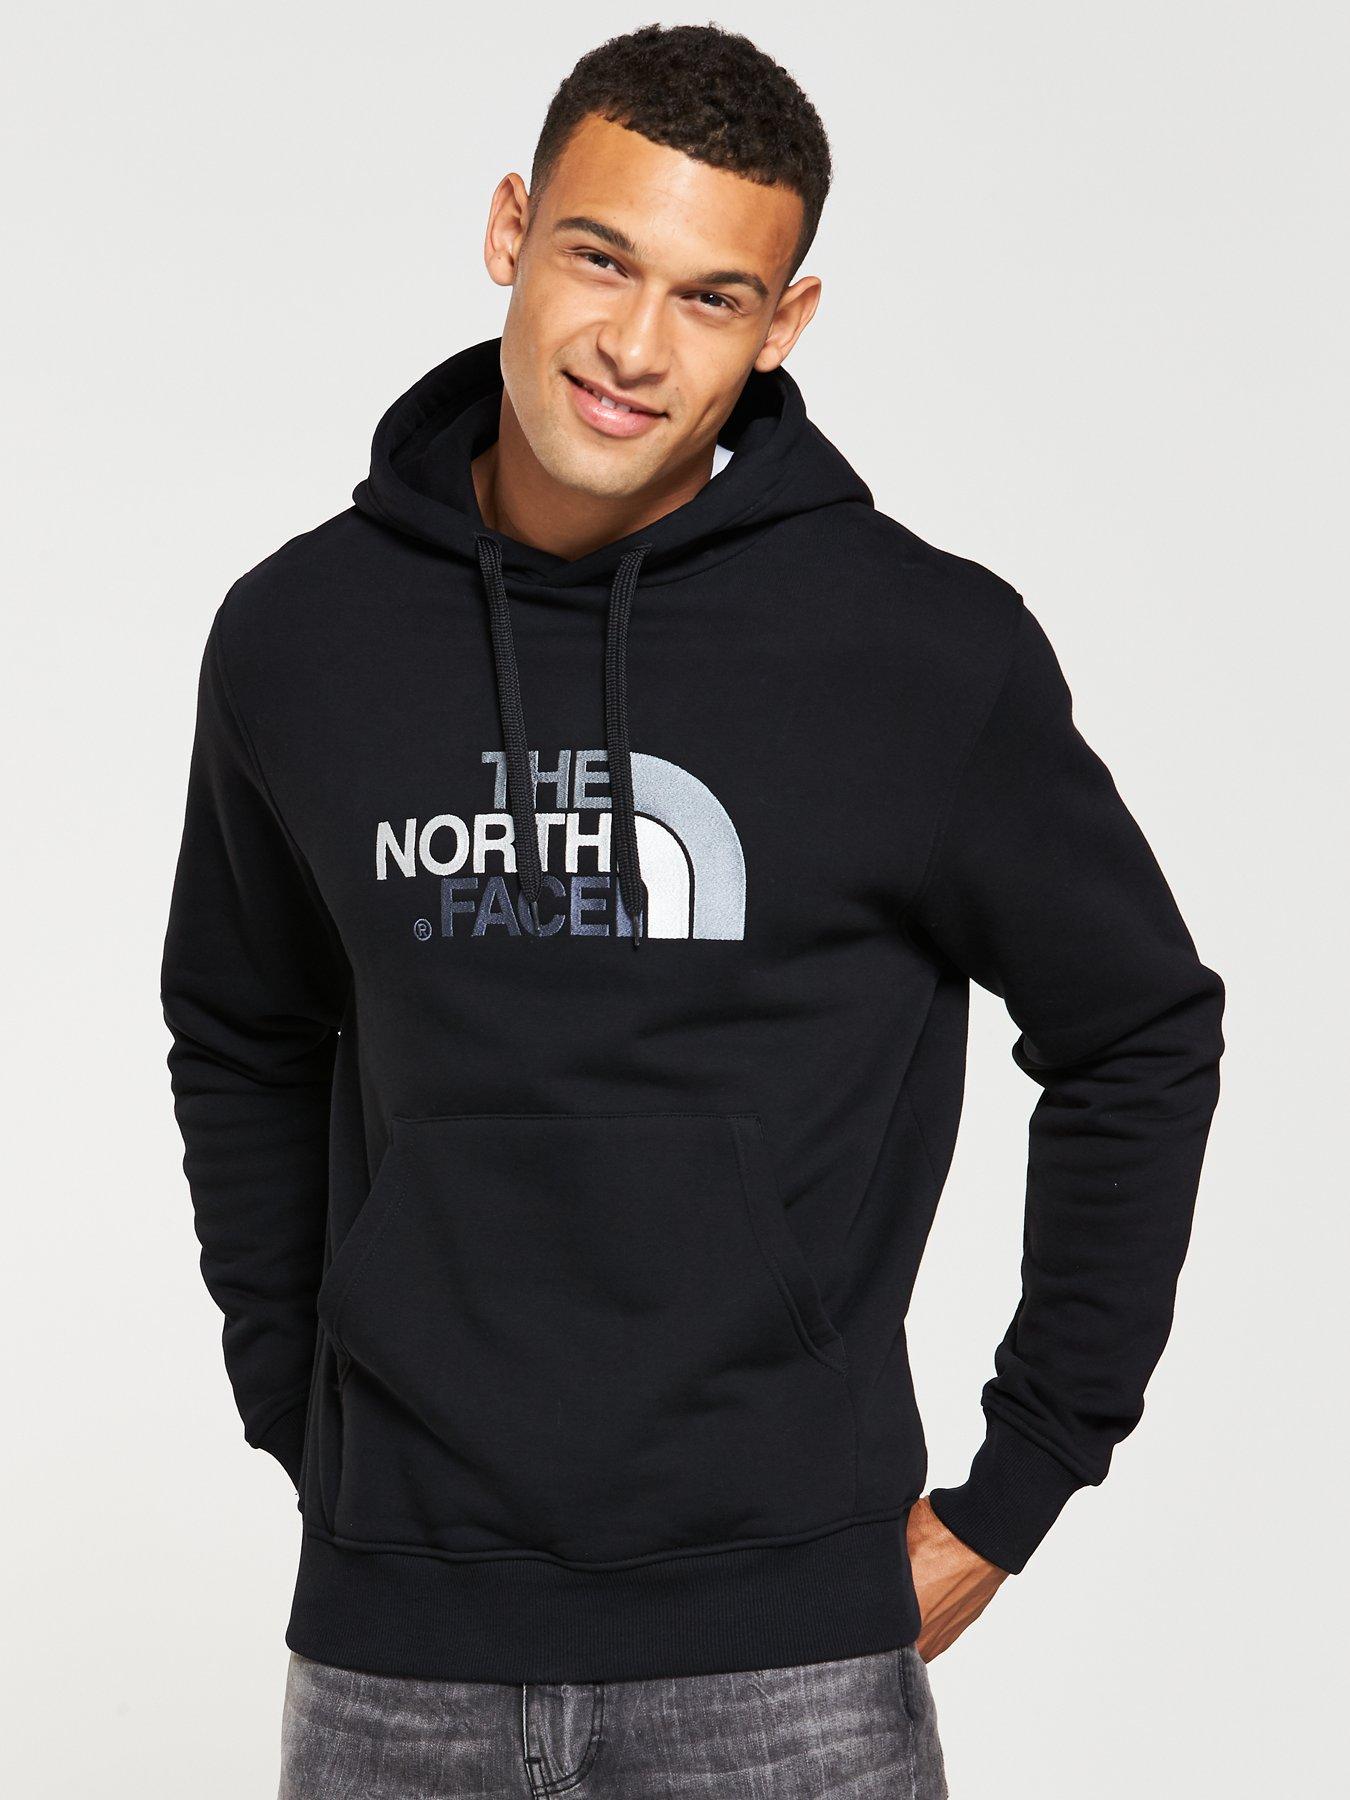 north face mens hoodies uk